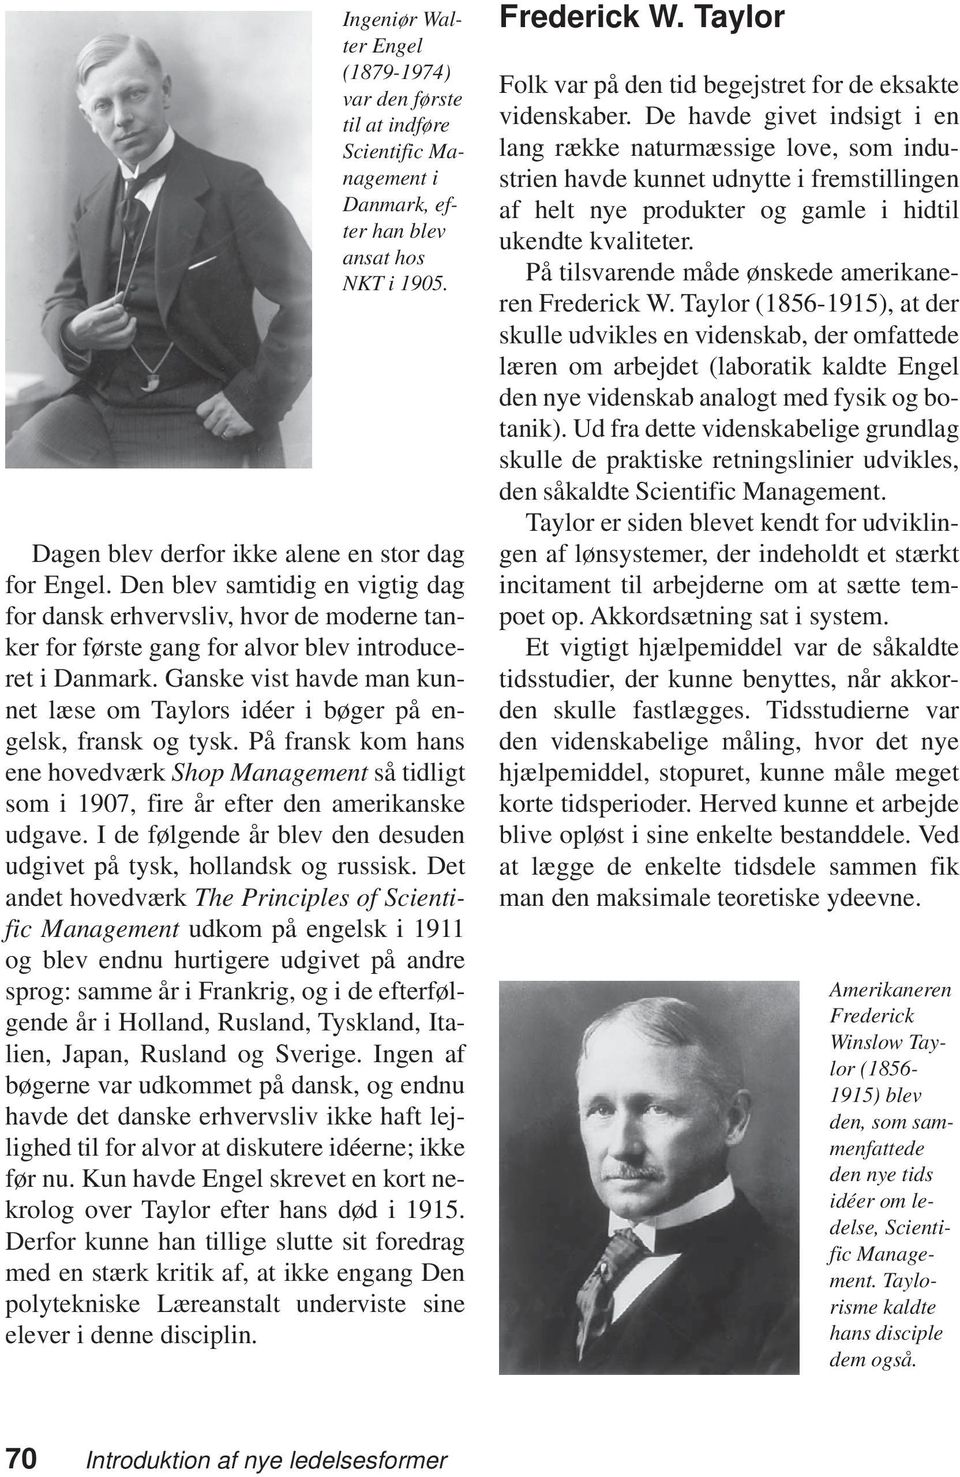 Ganske vist havde man kunnet læse om Taylors idéer i bøger på engelsk, fransk og tysk. På fransk kom hans ene hovedværk Shop Management så tidligt som i 1907, fire år efter den amerikanske udgave.